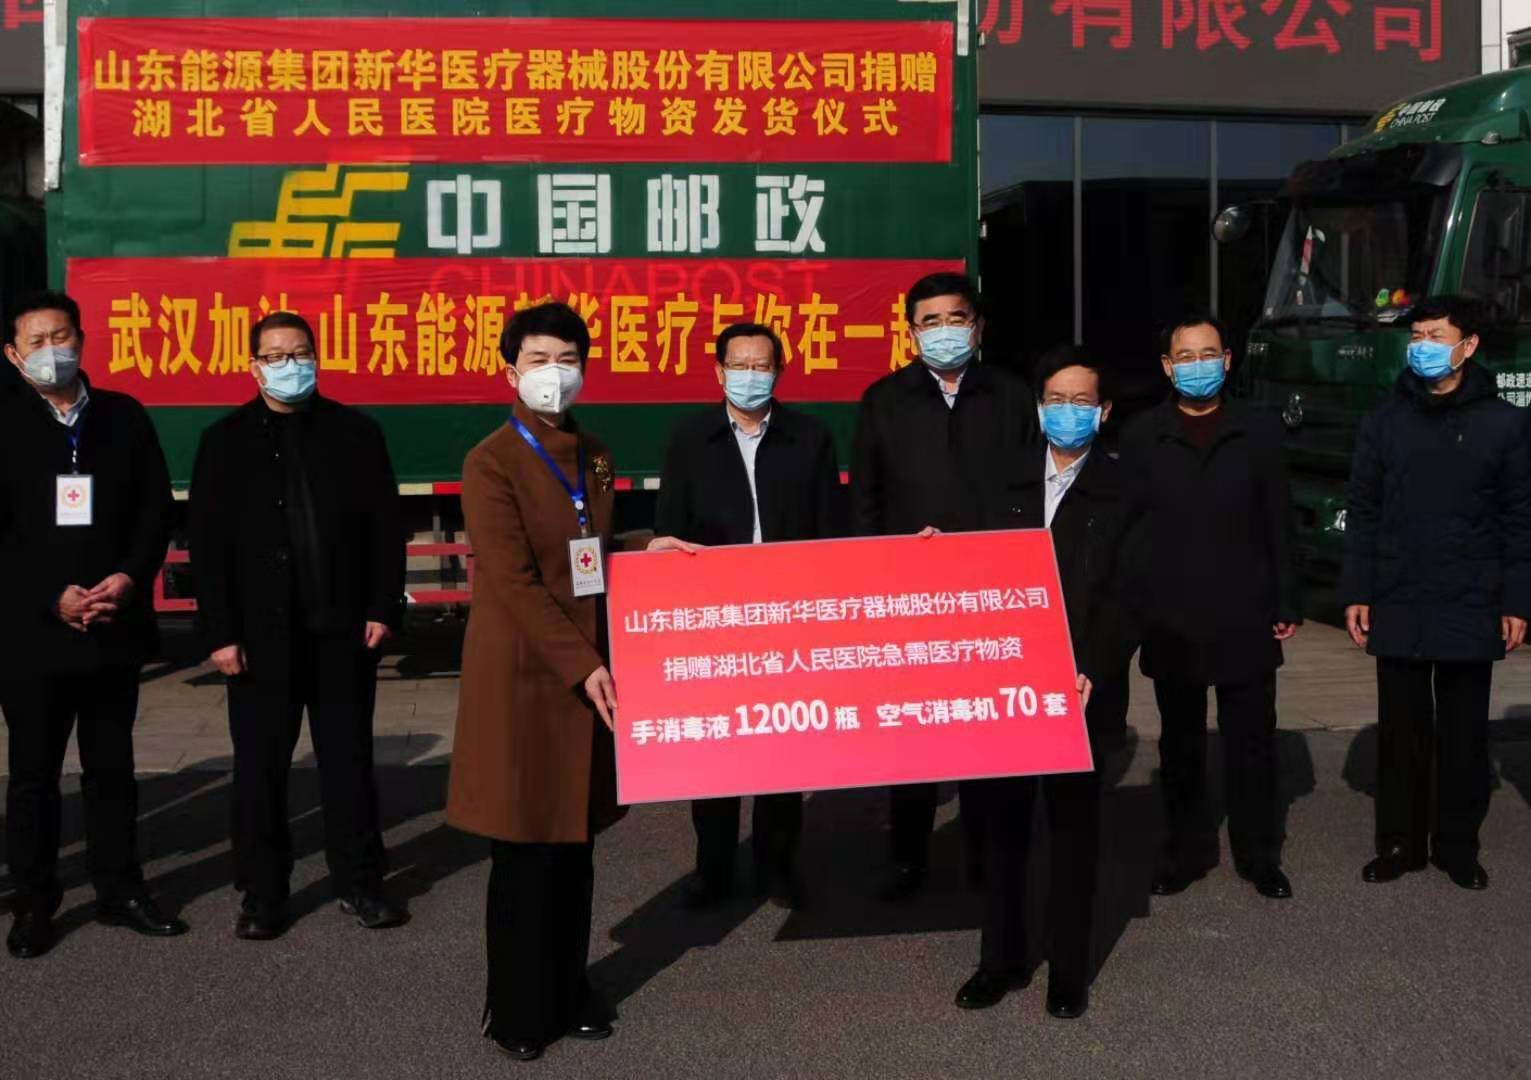 爱心驰援 淄博企业向疫区捐赠12000瓶手消毒液